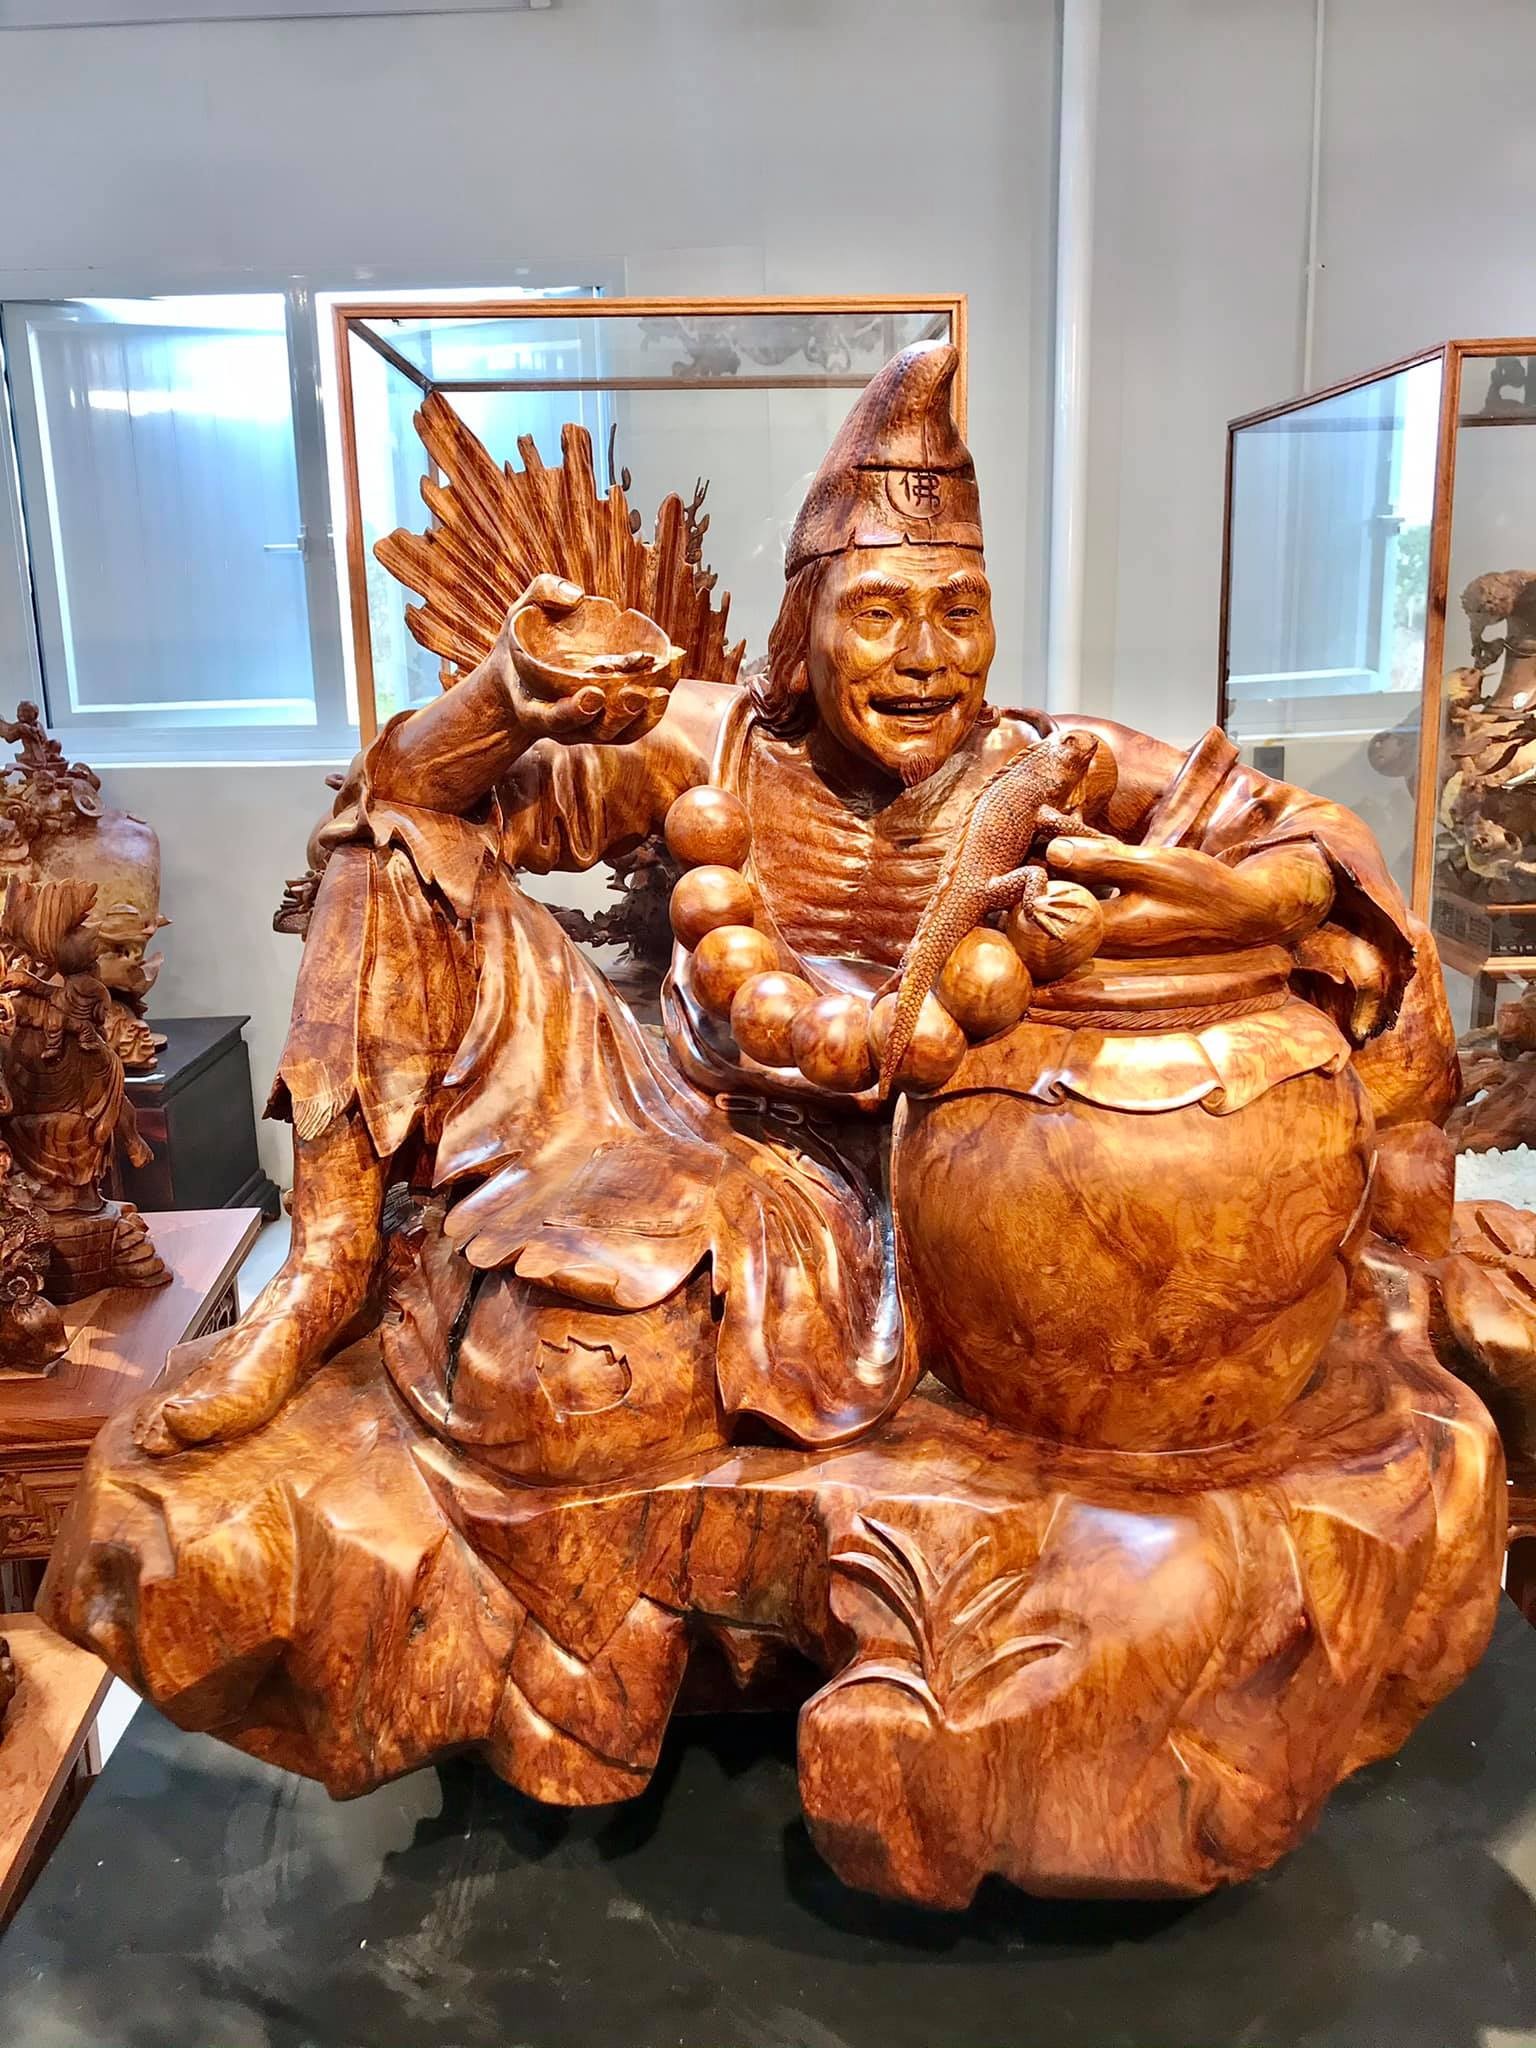 Sự đa dạng về nghệ thuật và ý nghĩa của sản phẩm mang lại tại tượng gỗ Trung Kiên - ảnh 3